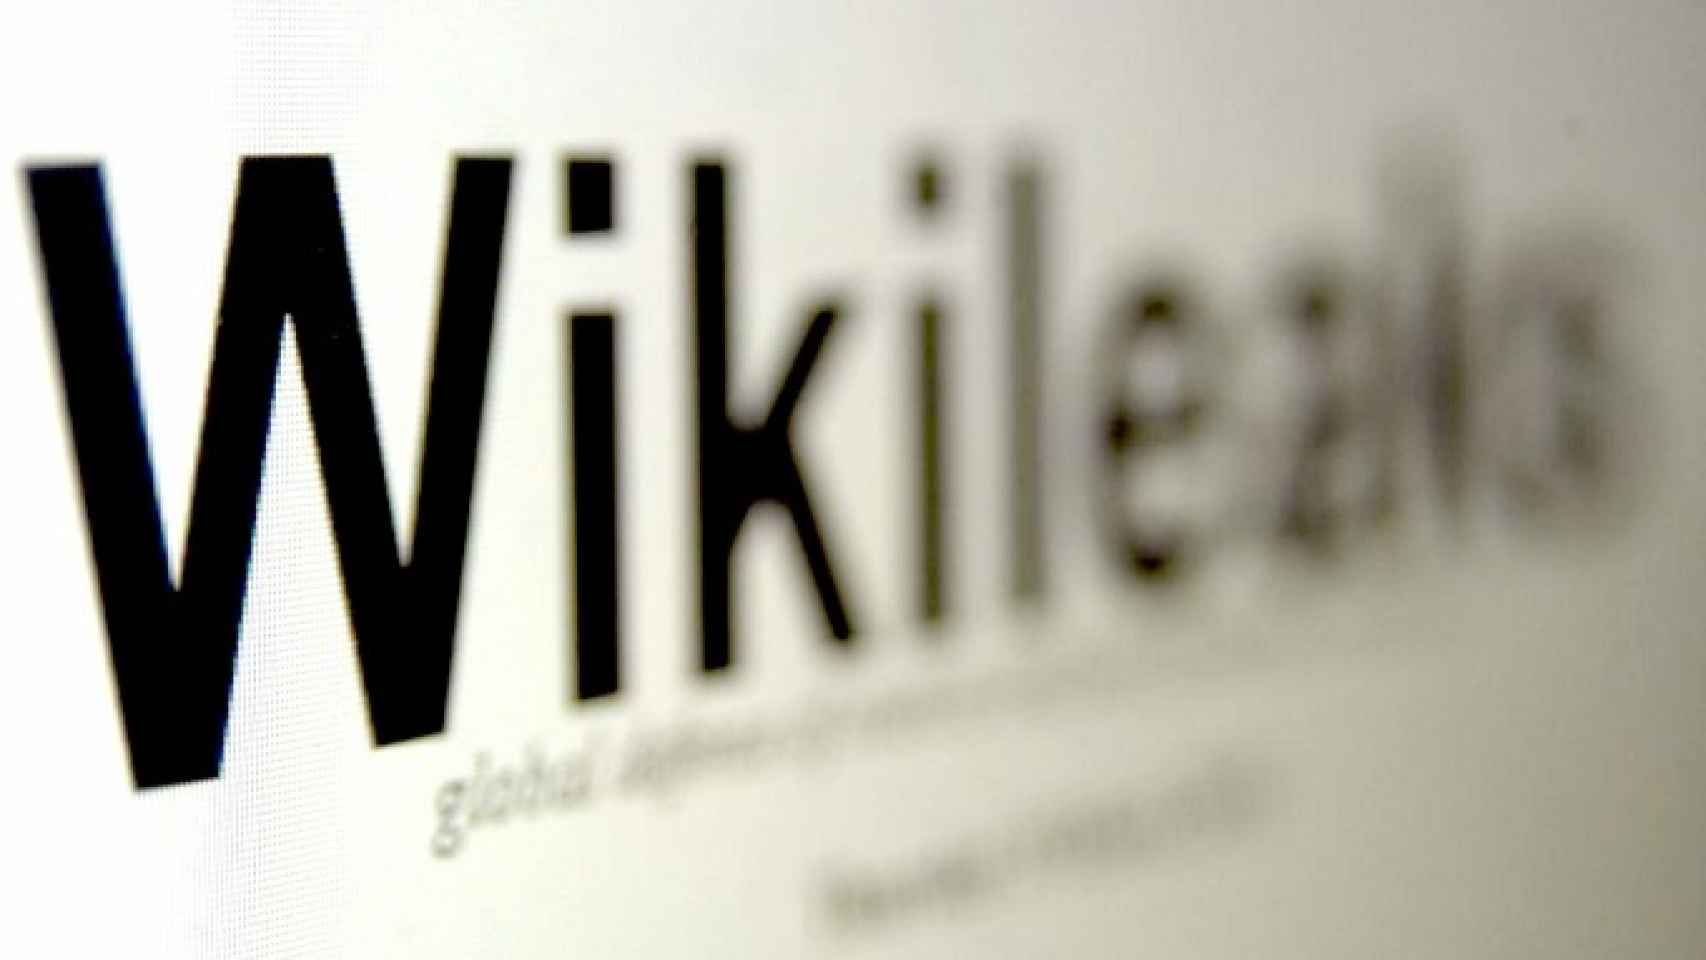 wikileaks-logo-01